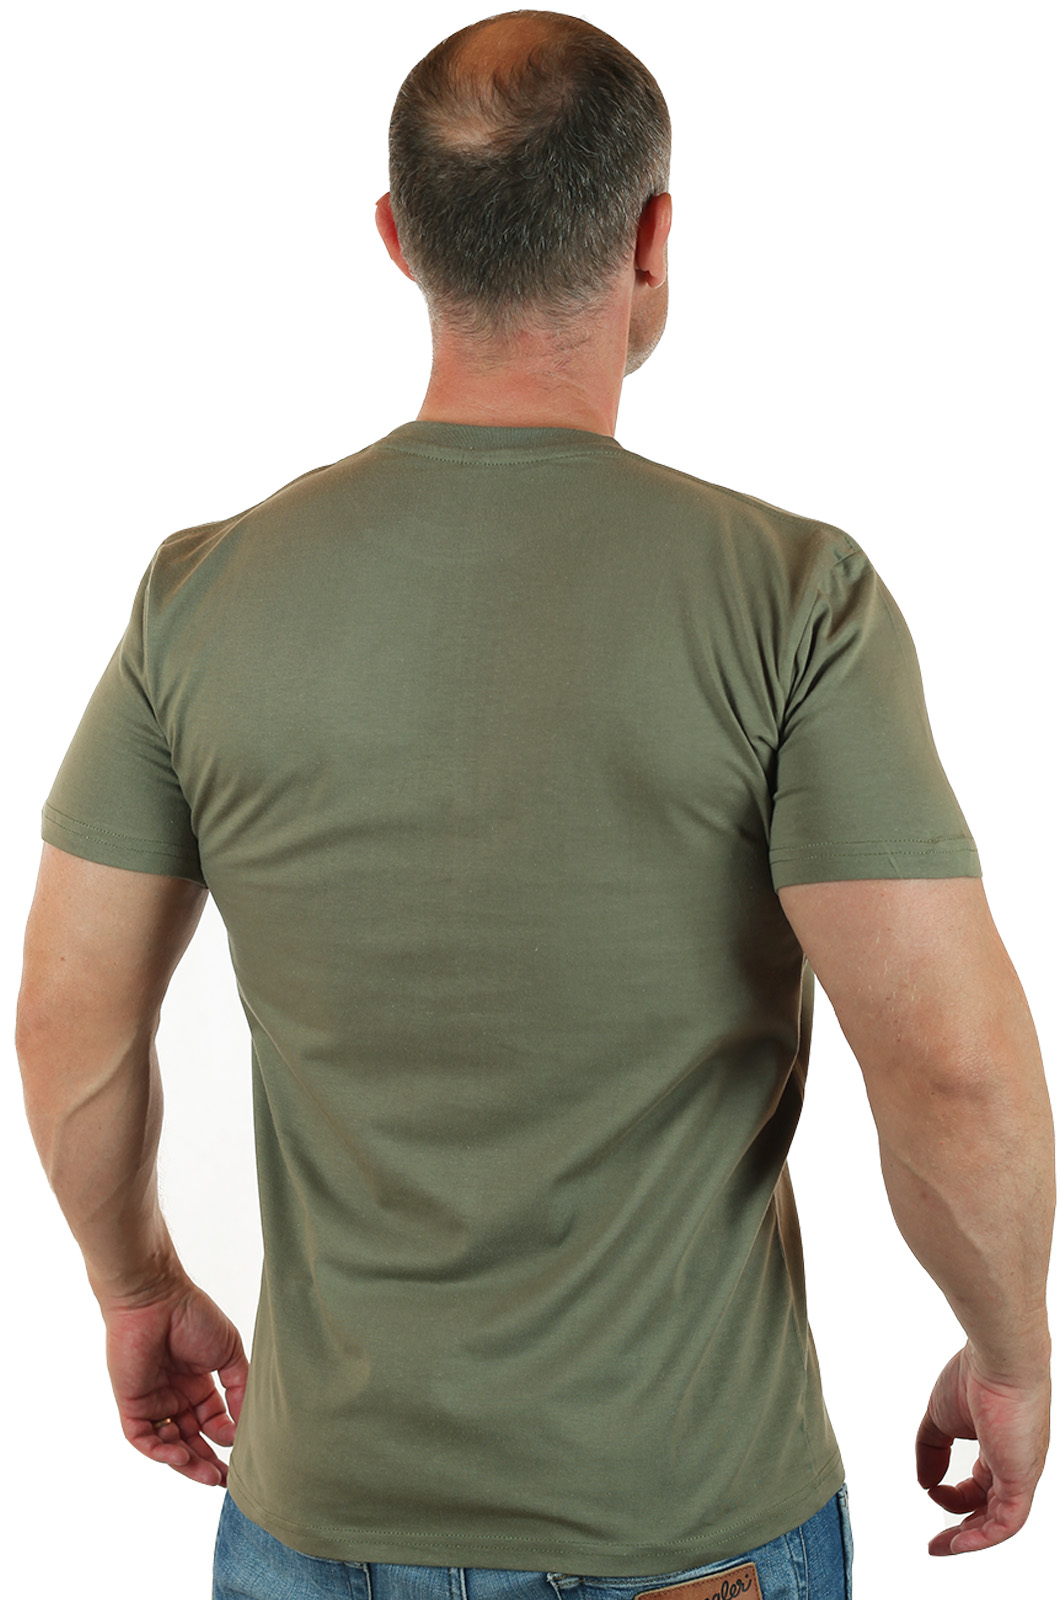 Армейская футболка с эмблемой Морской пехоты 